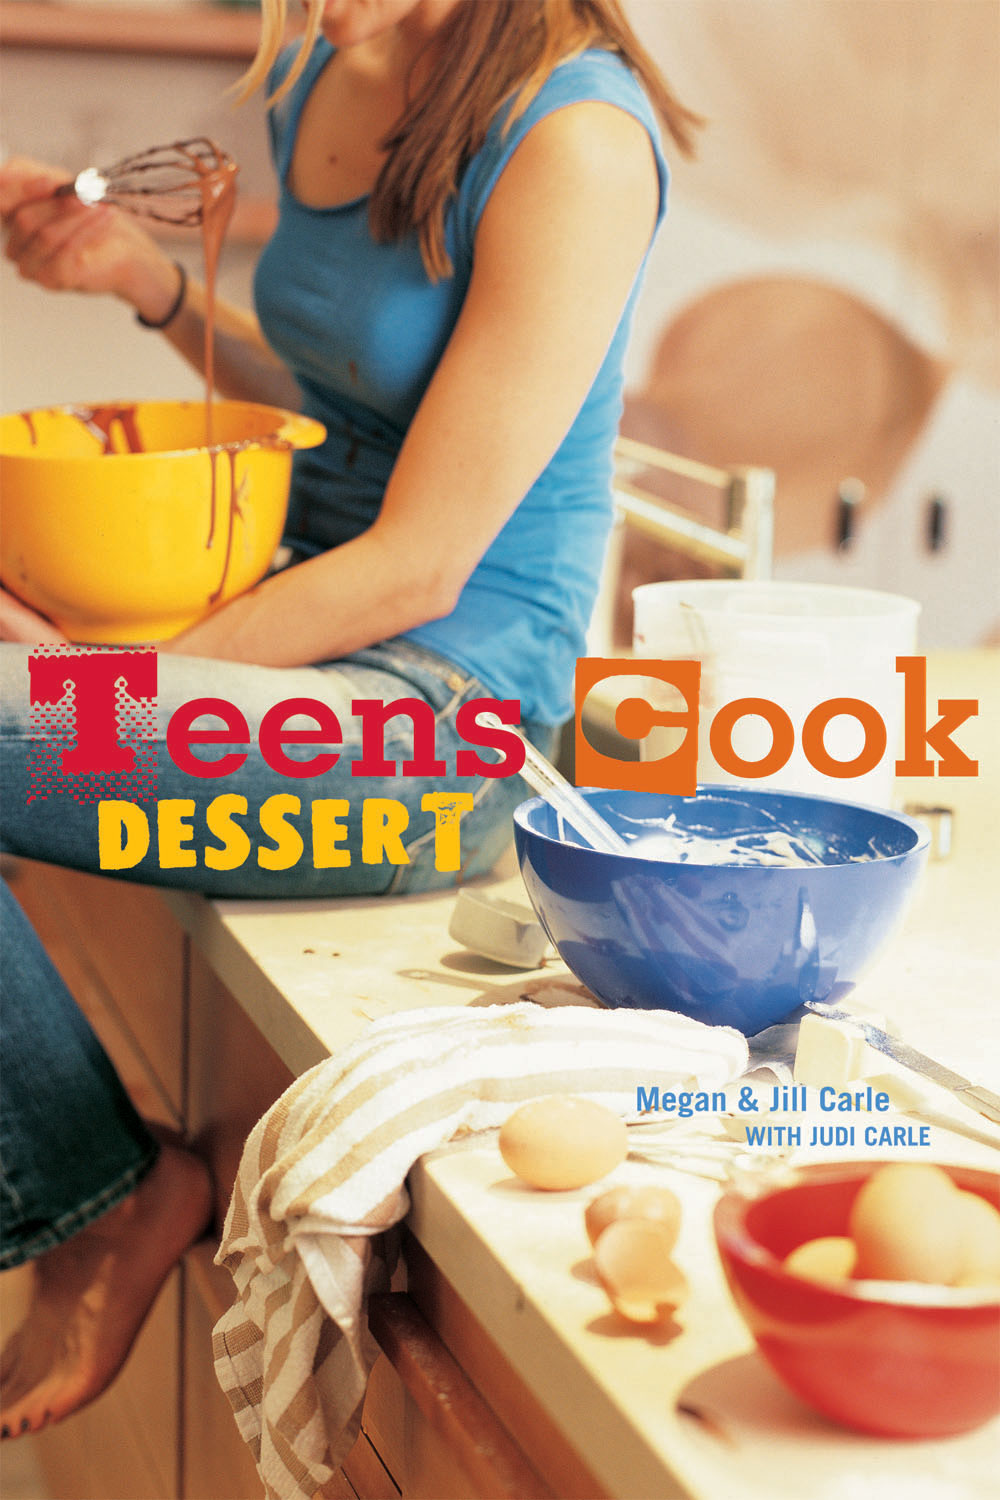 tnds-teens-cook-dessert.jpg